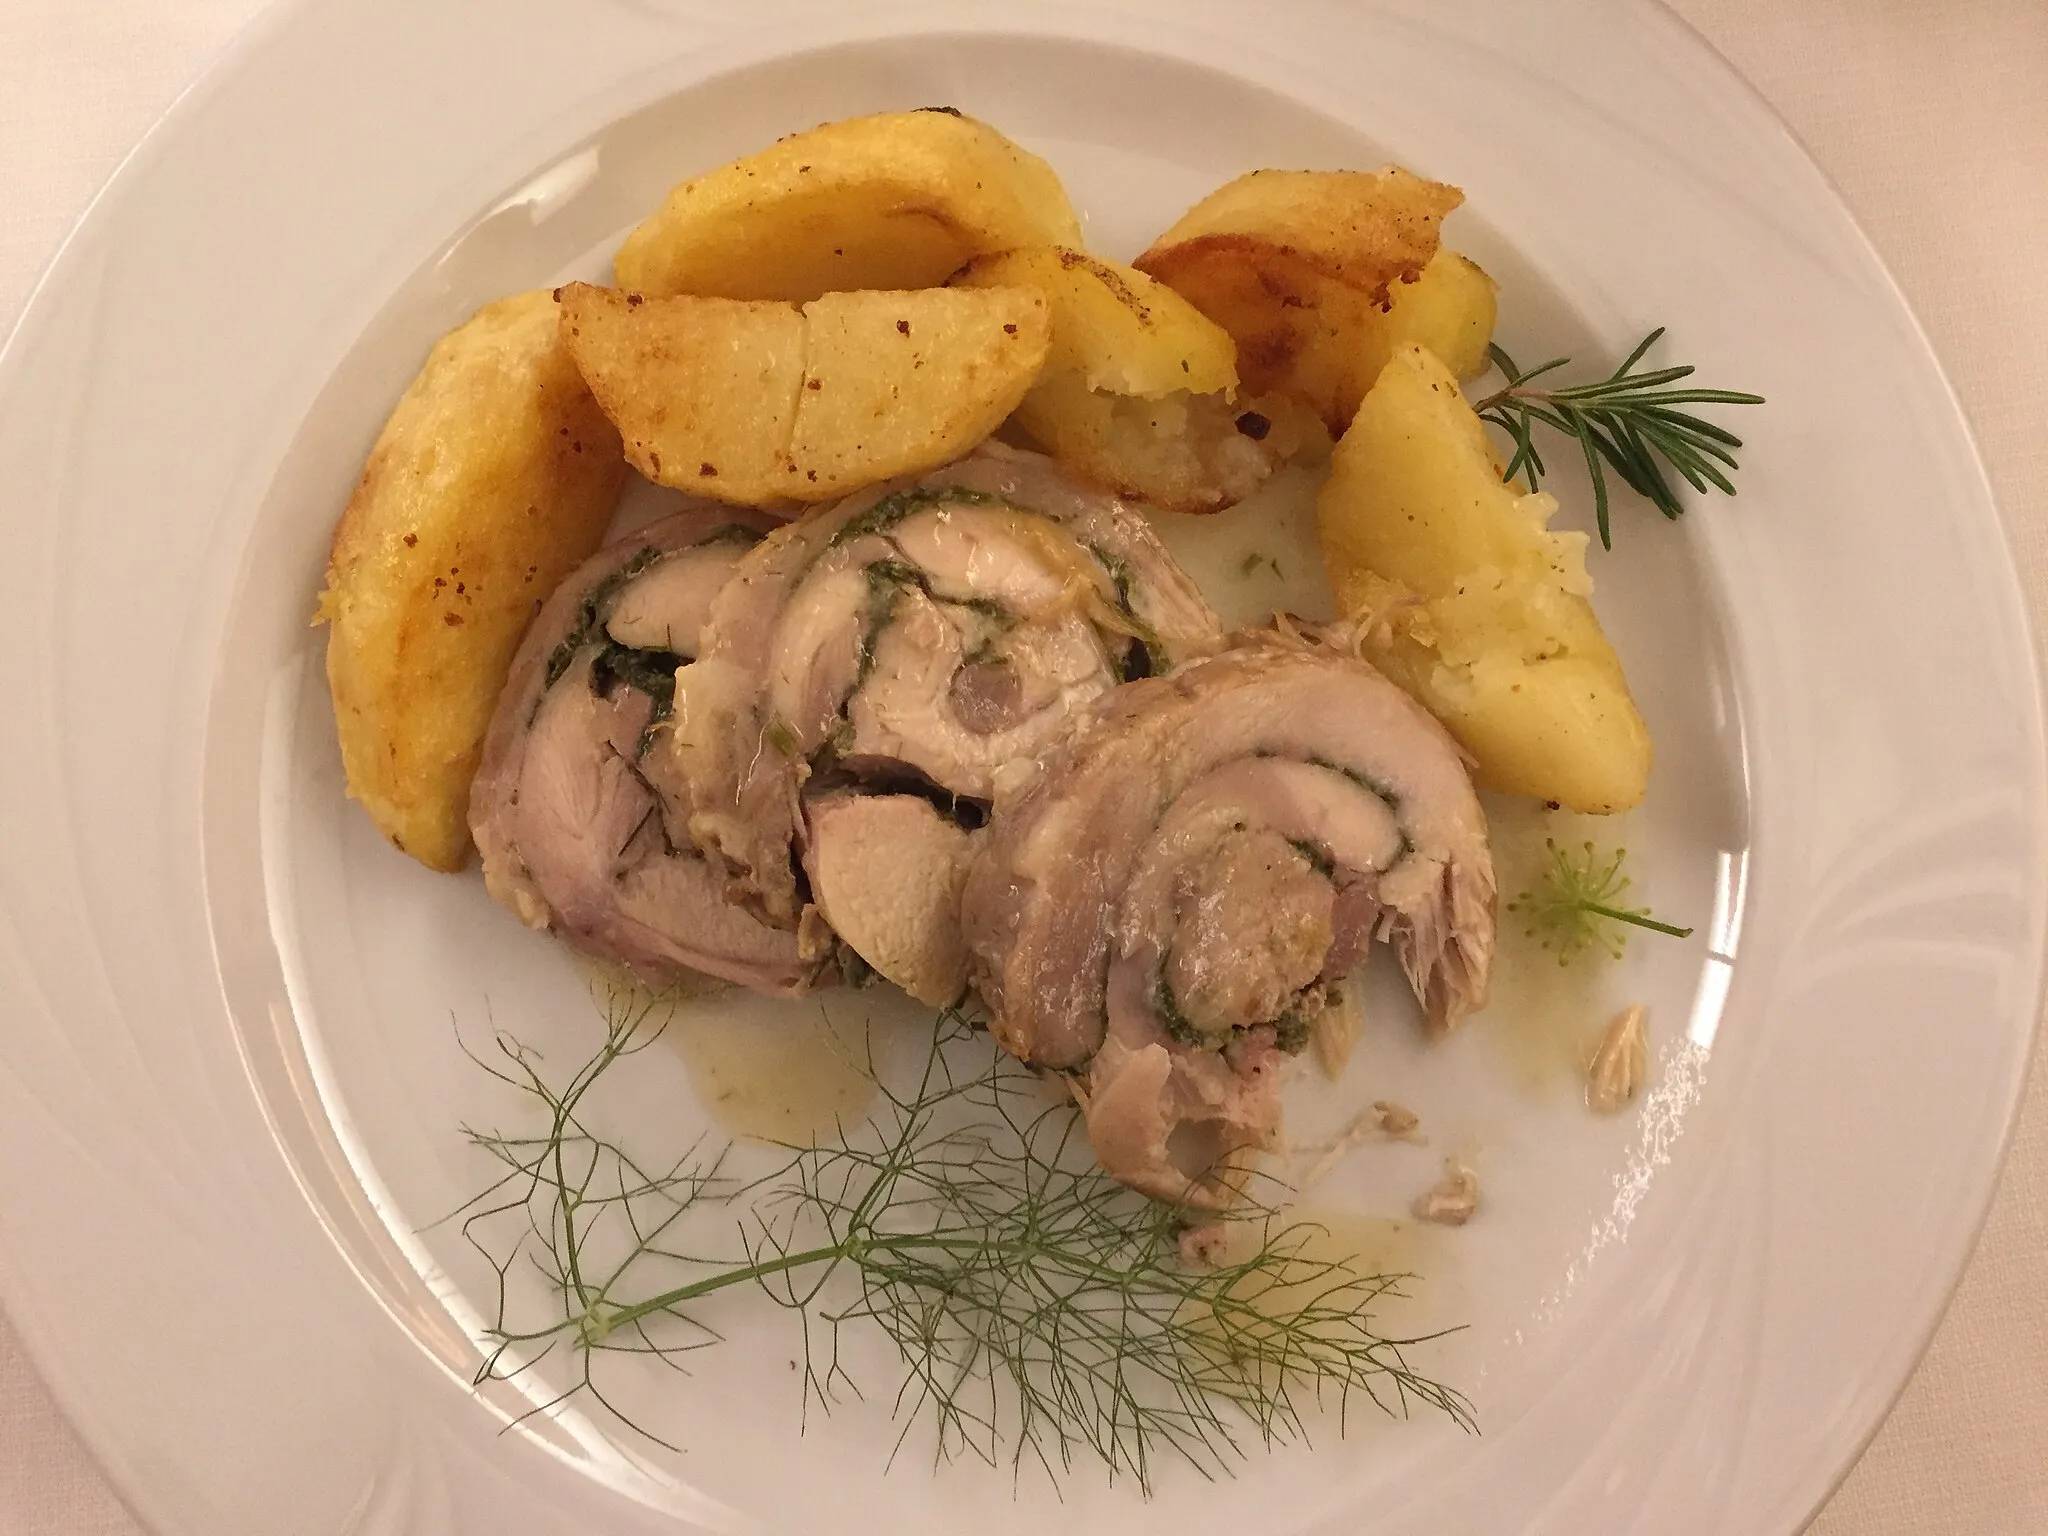 Photo showing: Coniglio con patate, Trattoria da Luciano, Russi (RA)